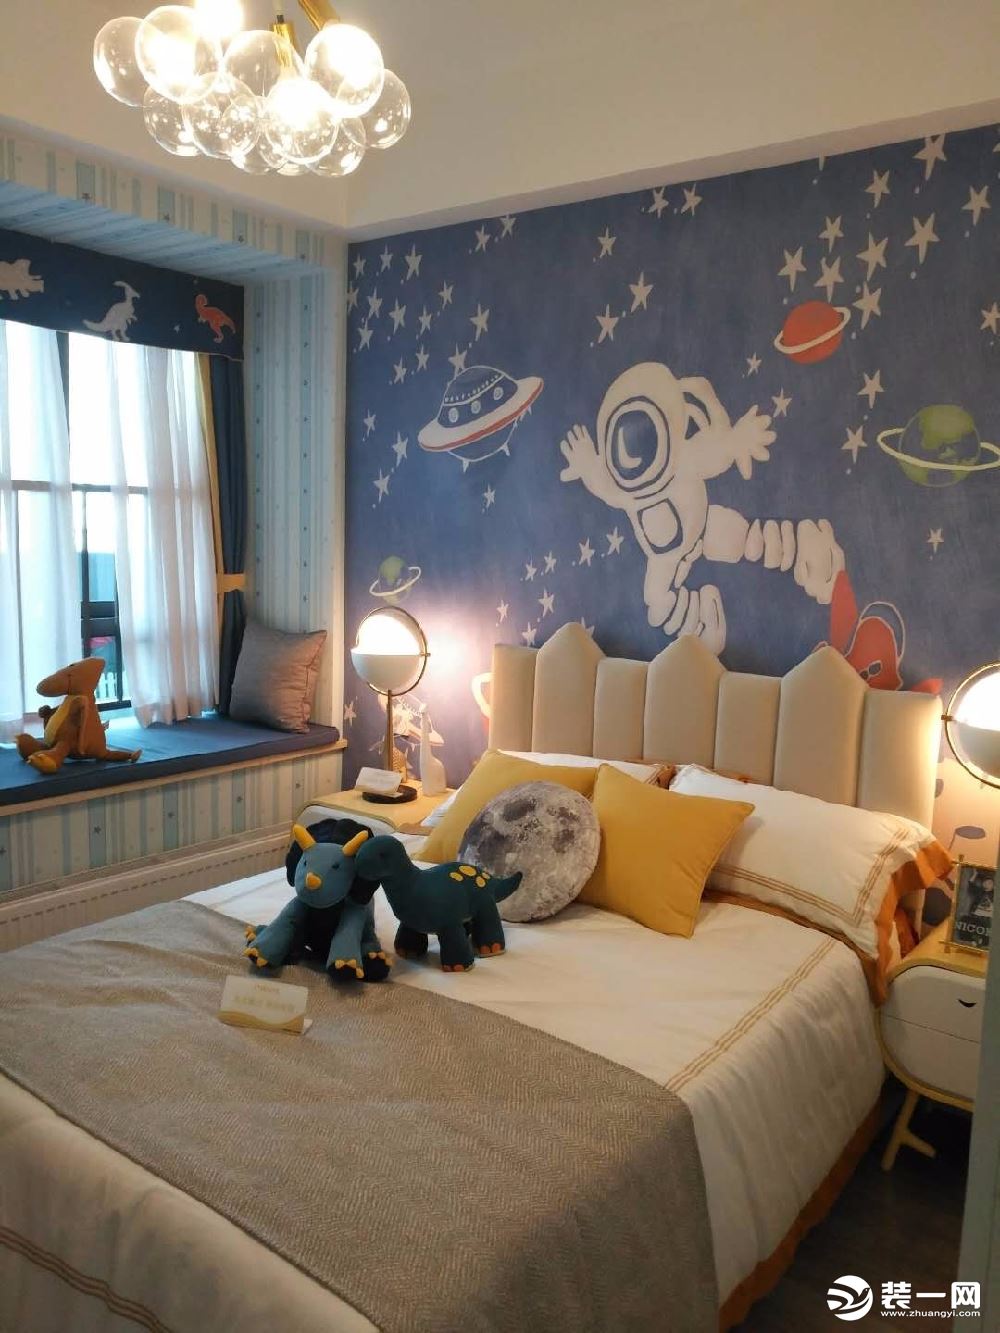 儿子房间床头背景使用了一幅卡通壁画，增加童趣。